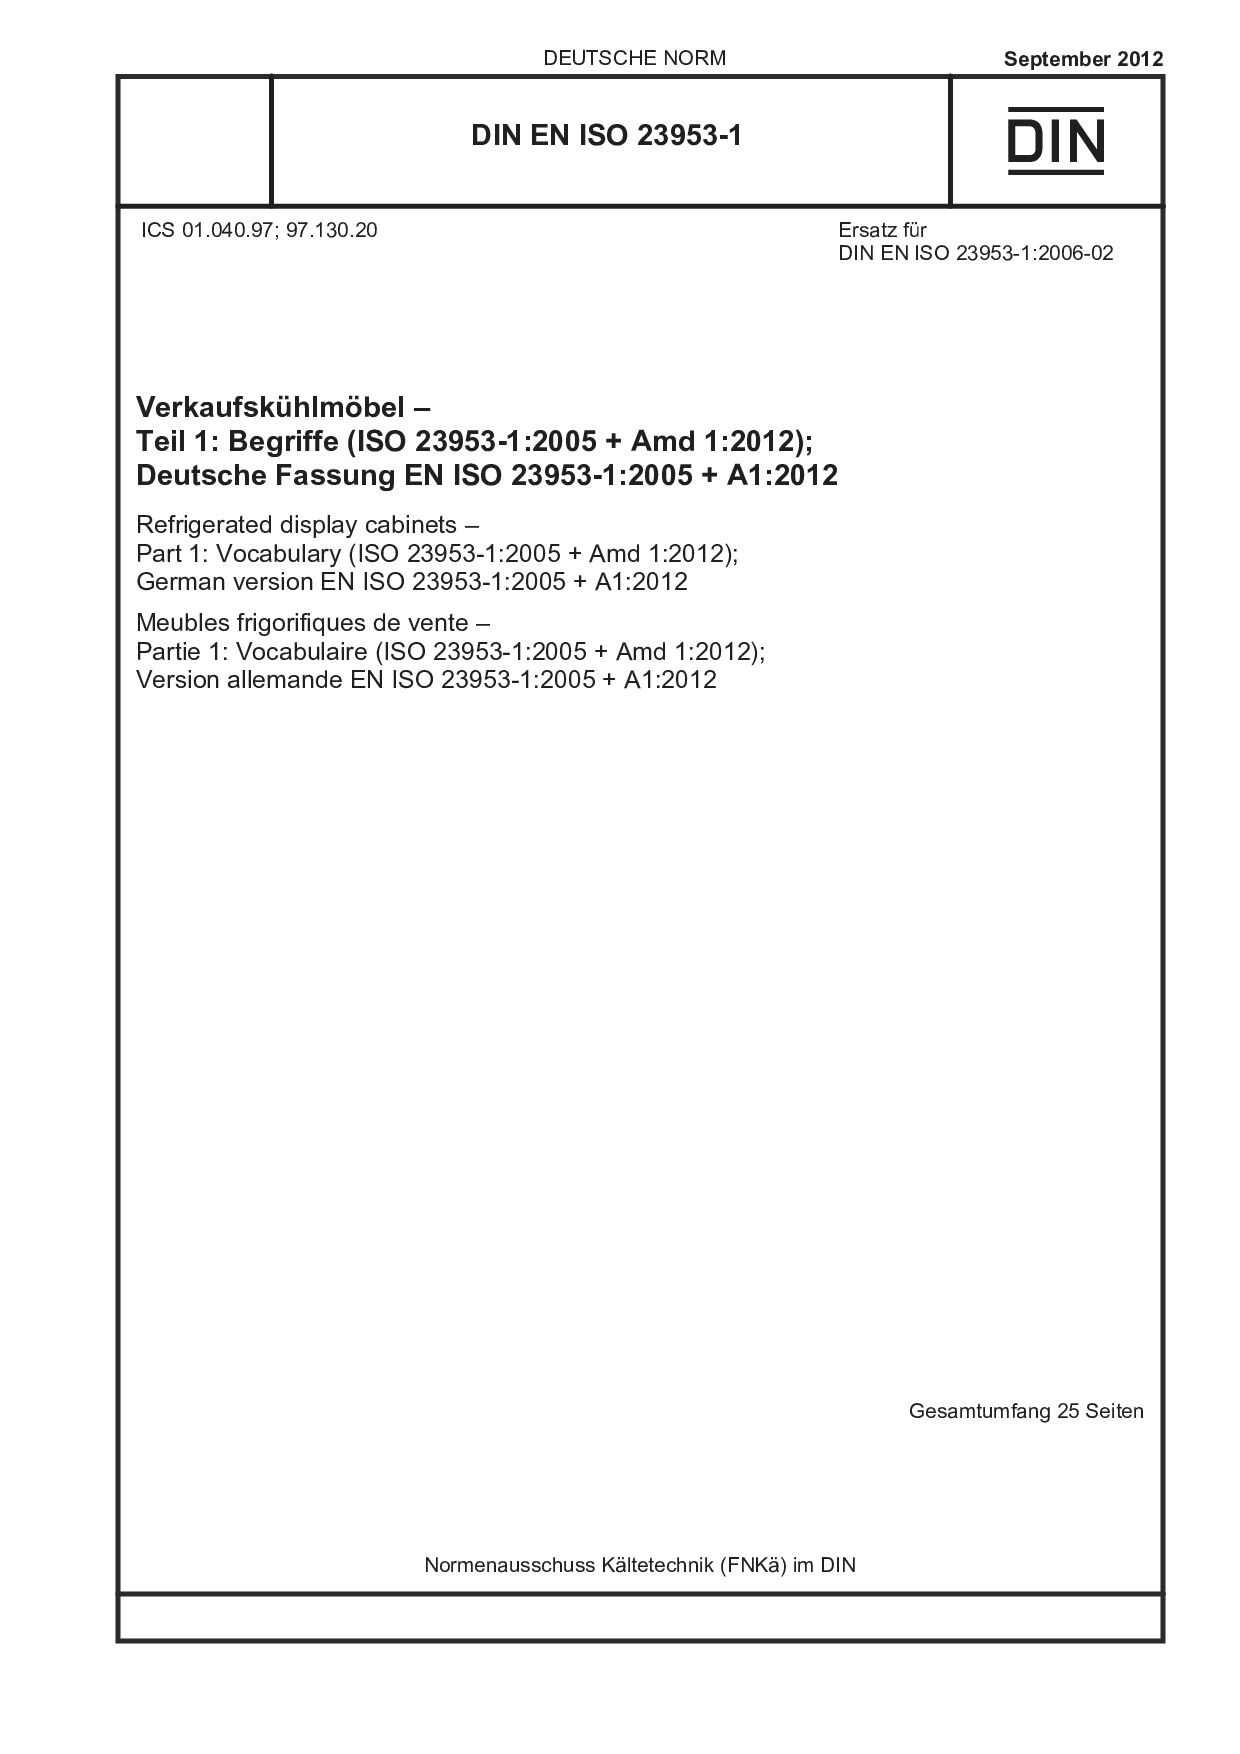 DIN EN ISO 23953-1:2012